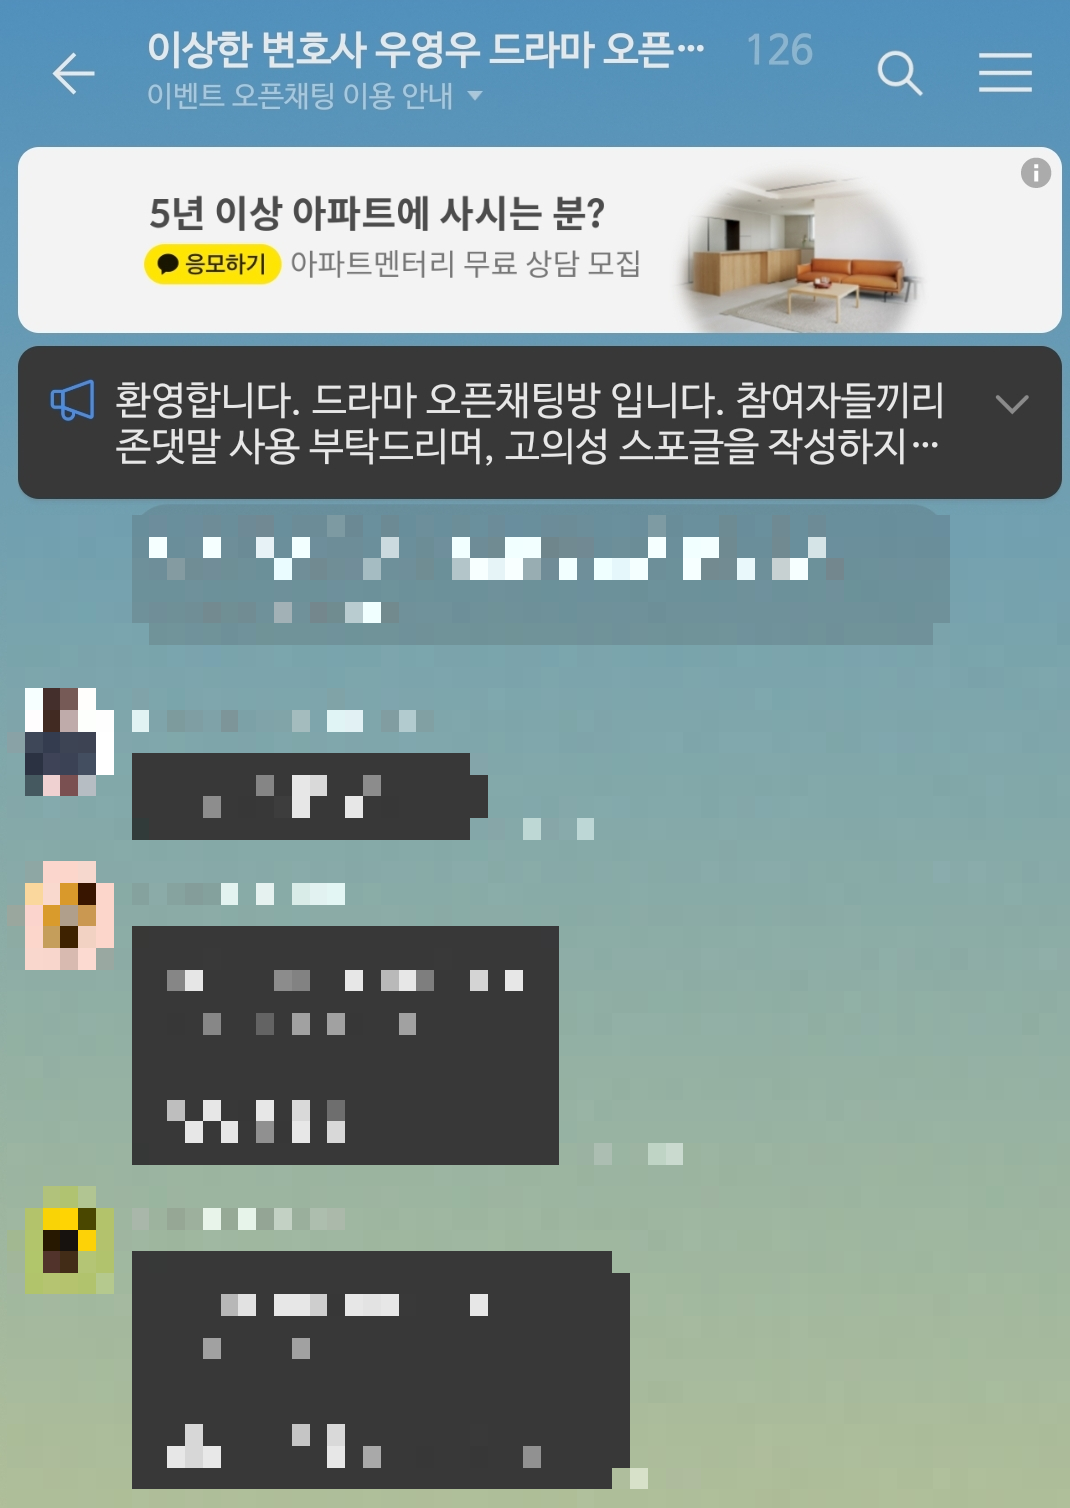 드라마 ‘이상한 변호사 우영우’ 오픈채팅바엥 붙은 비즈보드 광고. 채팅방 캡처